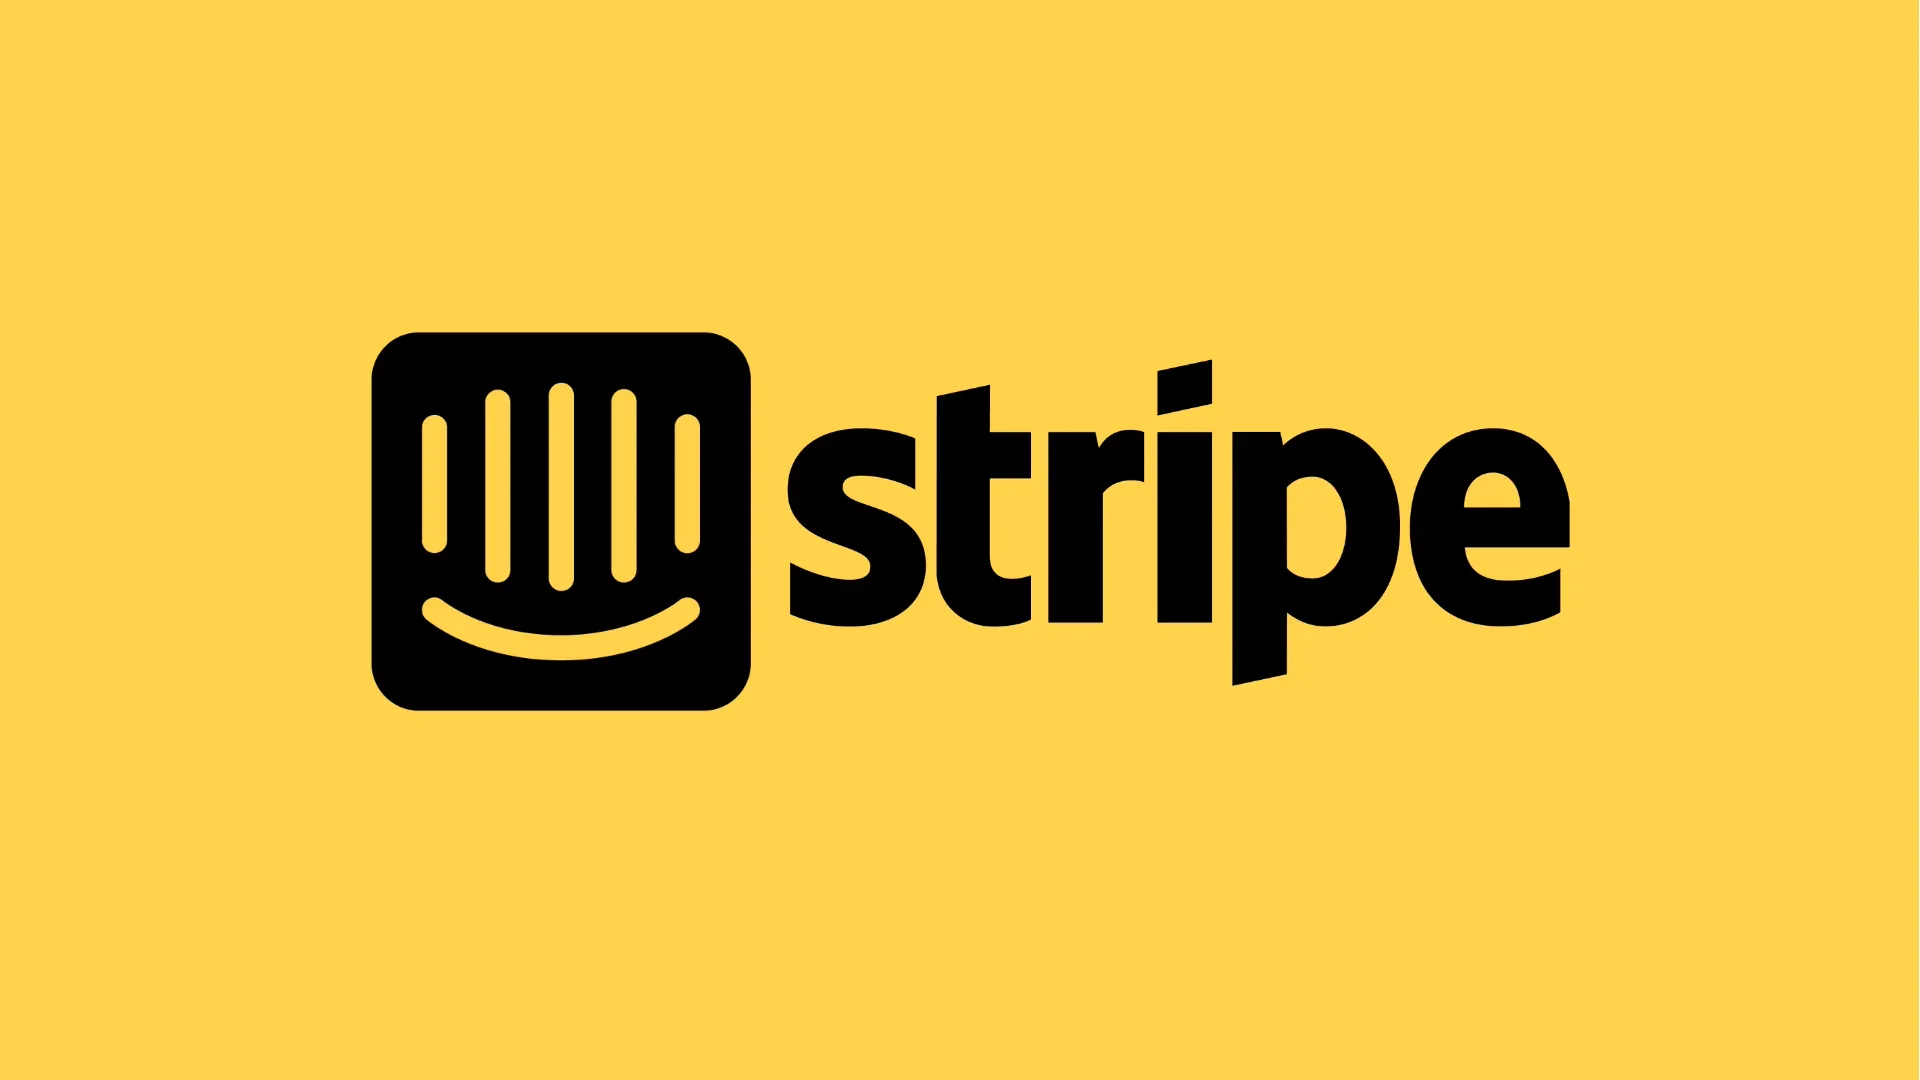 powered by stripe logo